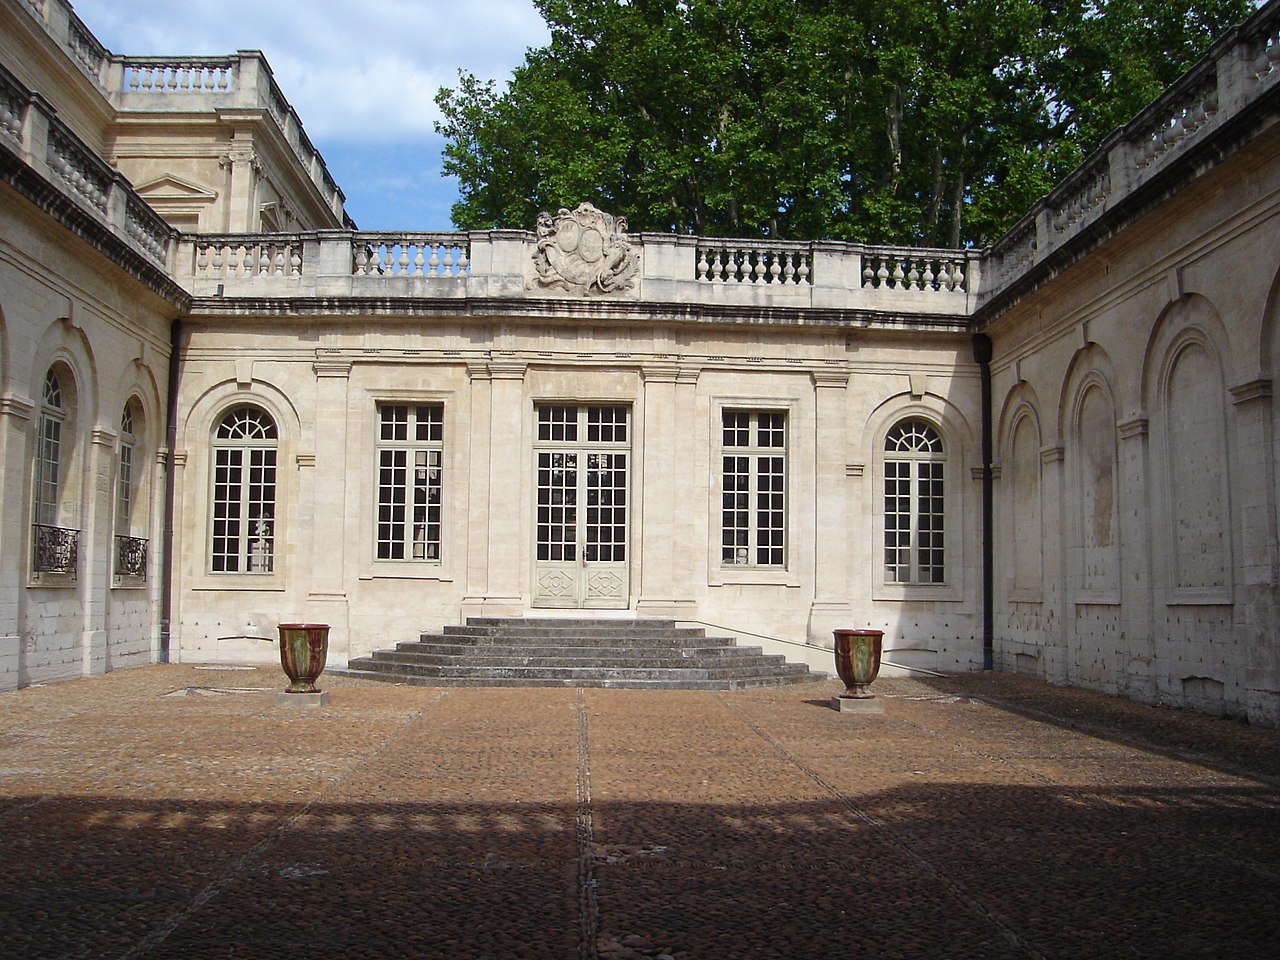 The Calvet Museum of Avignon